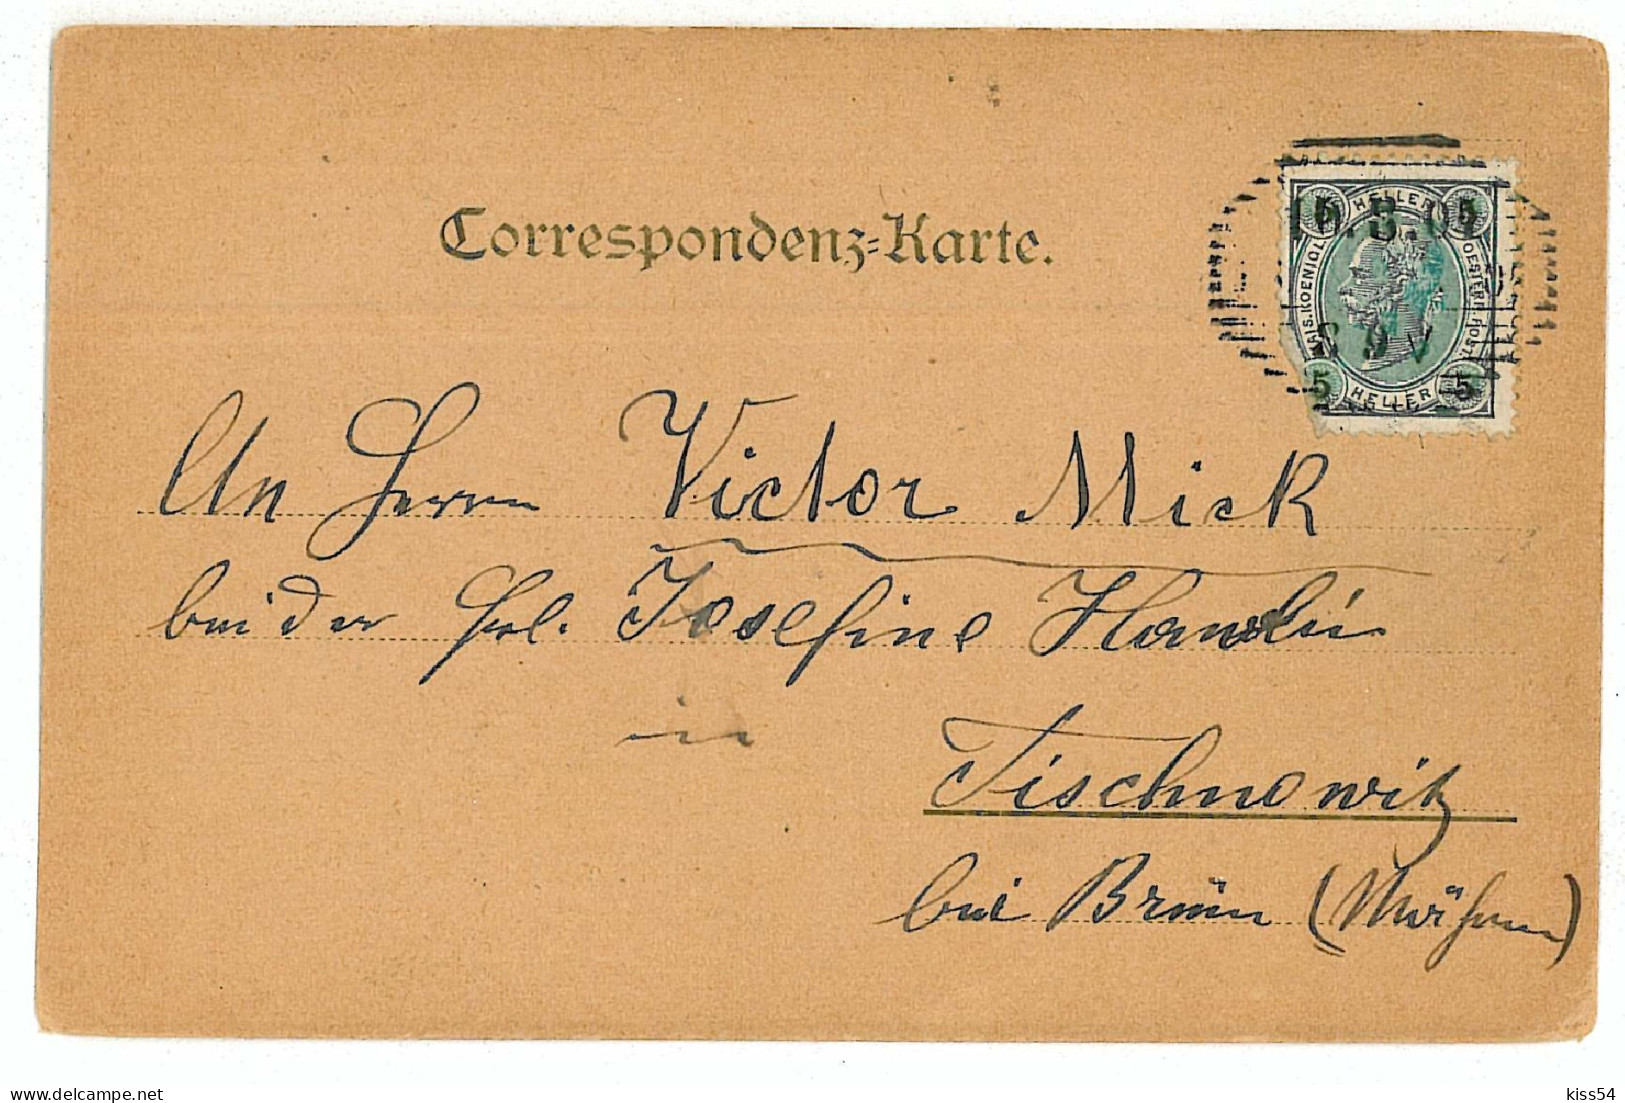 AUS 1 - 6370 VIENNA, Austria - Litho, Market - Old Postcard - Used - 1901 - Vienna Center